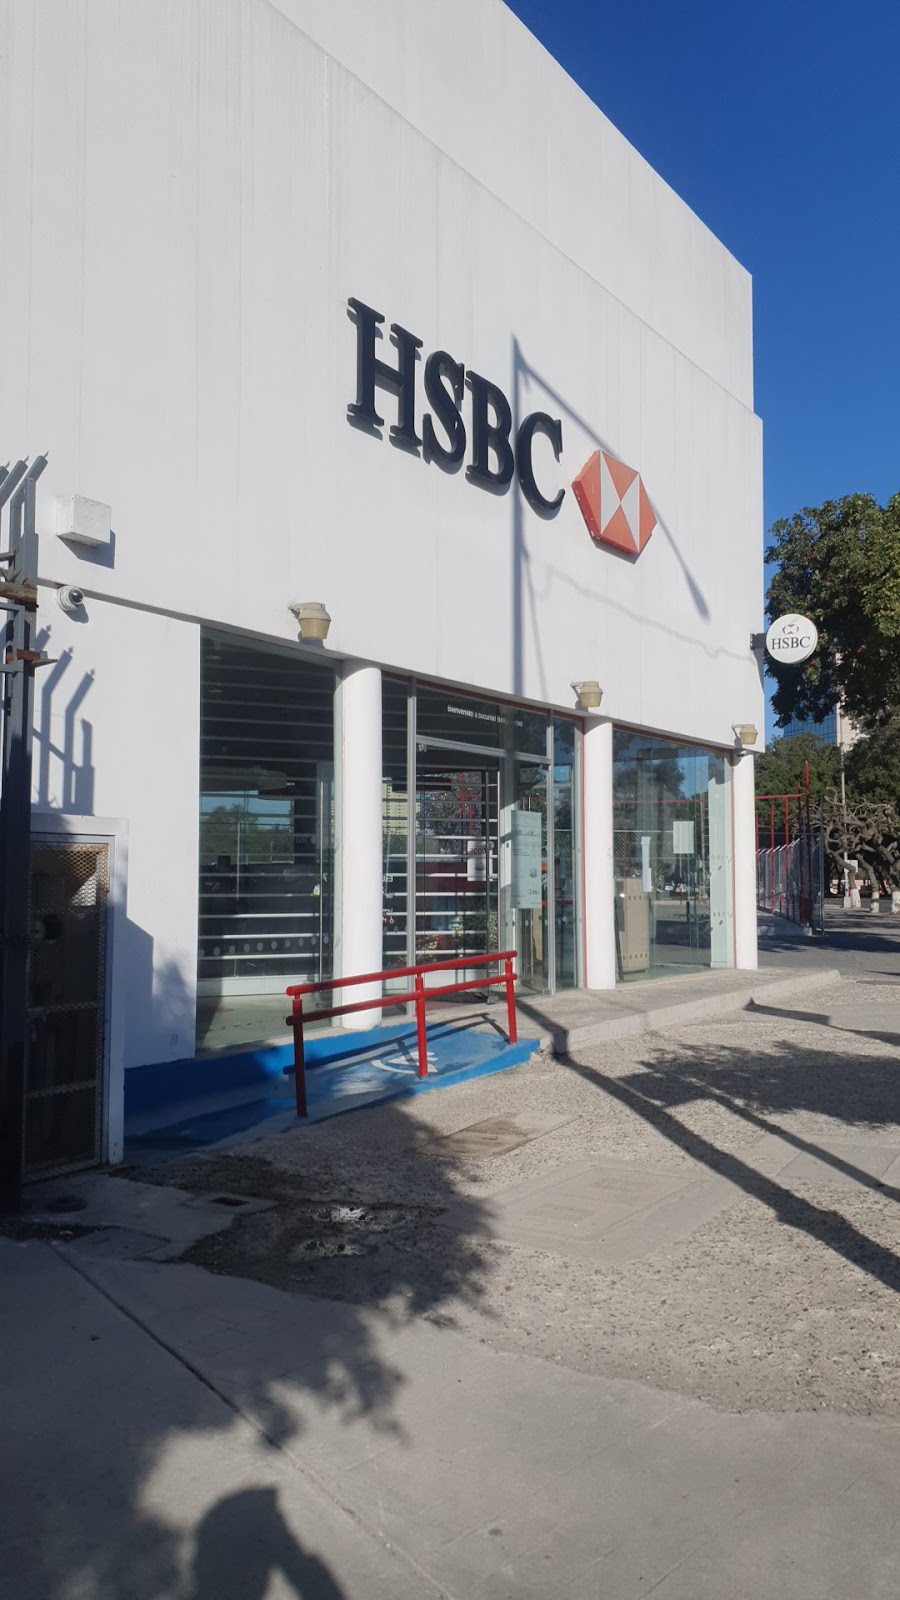 HSBC | Av, P.º del Centenario No. 10447, Zona Urbana Rio Tijuana, 22010 Tijuana, B.C., Mexico | Phone: 664 623 5408